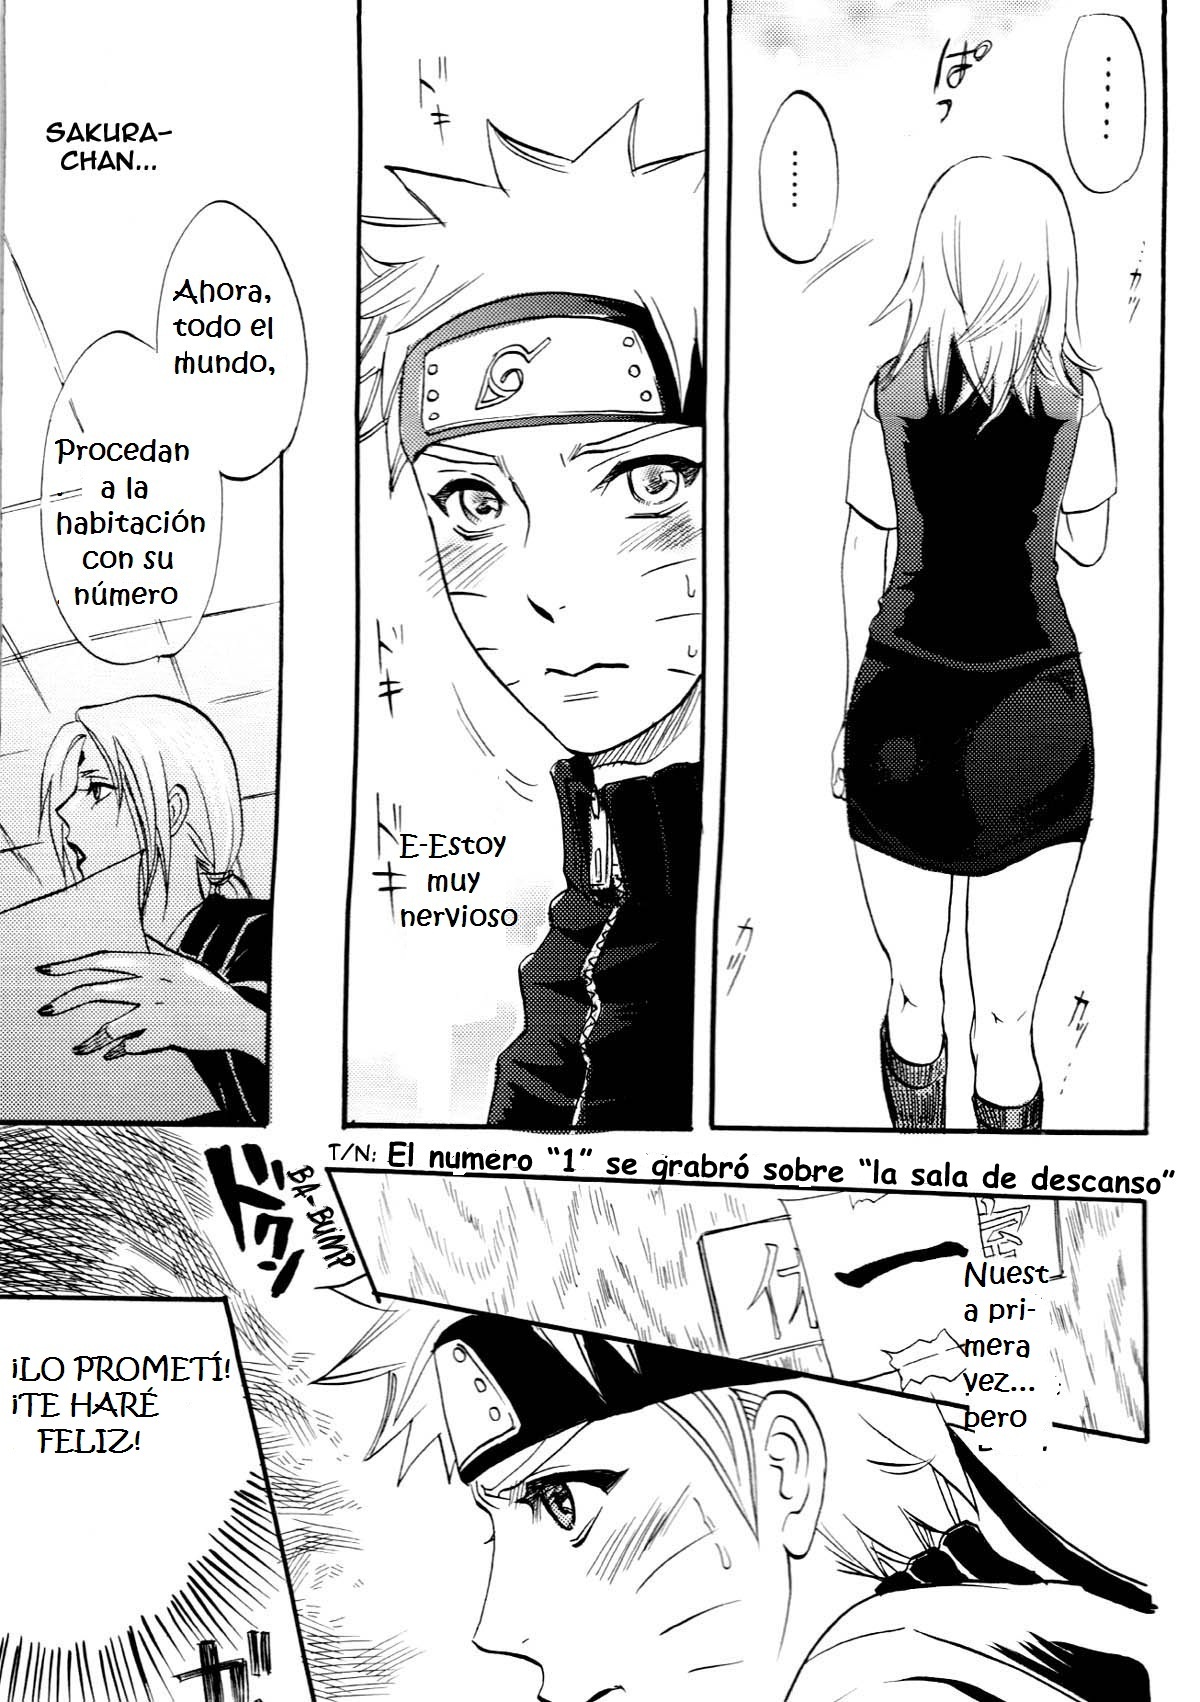 Fude Oroshi no Gi (Naruto Manga Yaoi) - 10 - Comics Porno - Hentai Manga - Cartoon XXX